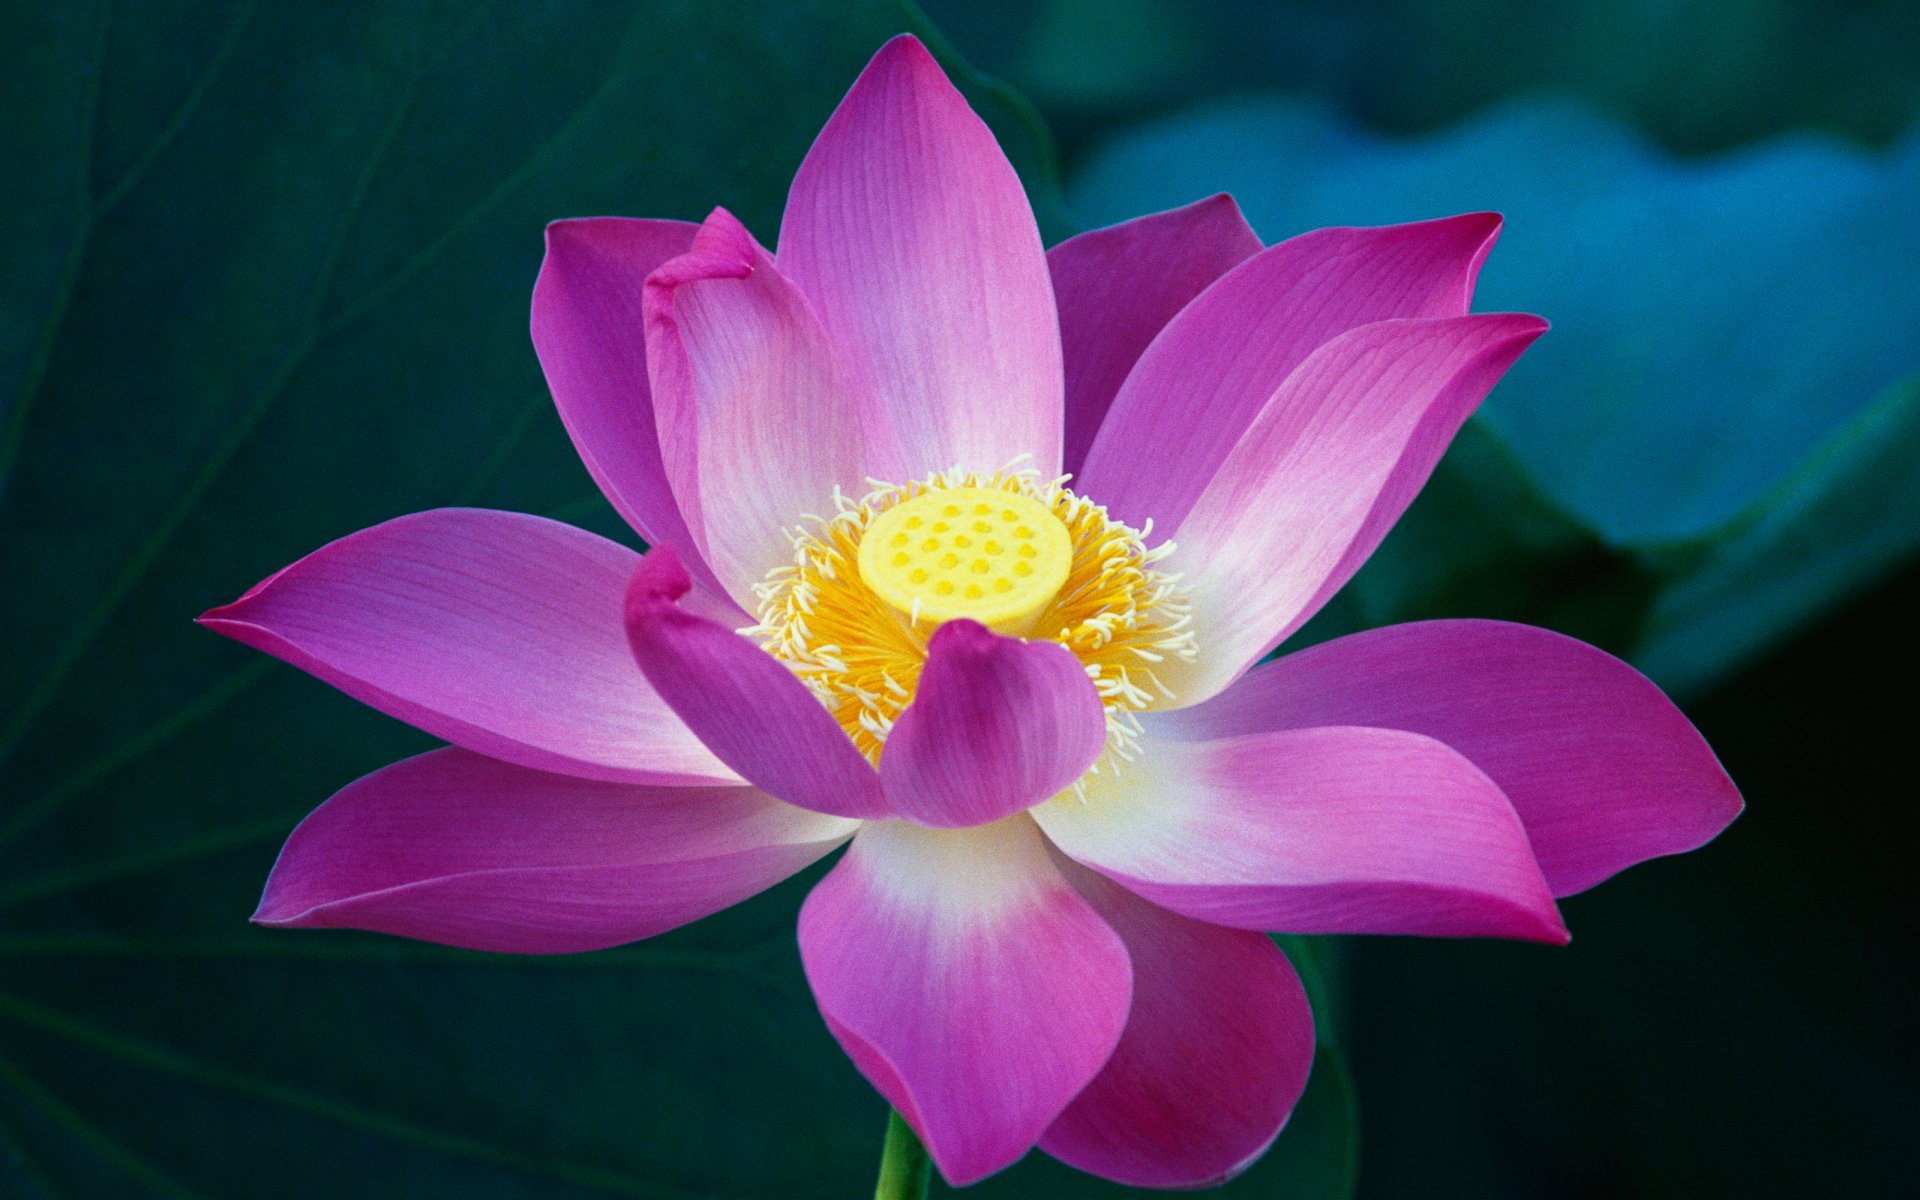 Sen - Hoa sen là biểu tượng của sự tinh khôi và thanh cao, thường được coi là hoa quốc hồn của Việt Nam. Hãy chiêm ngưỡng bức hình liên quan đến Sen để cảm nhận vẻ đẹp thuần khiết của nó.